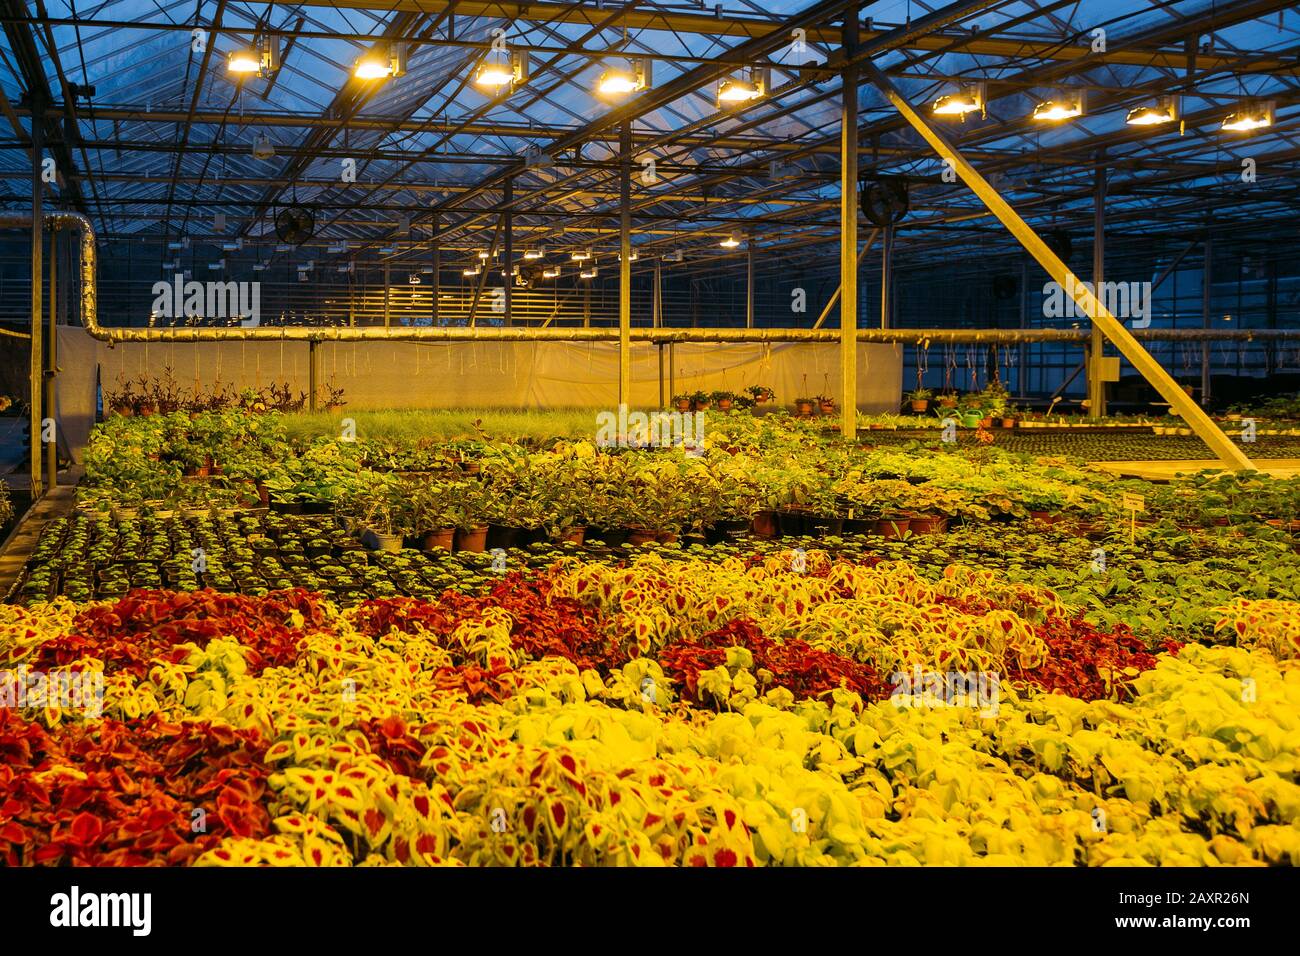 Bunte Coleus Pflanzen wachsen abends in modernem Gewächshaus bei künstlichem Licht Stockfoto